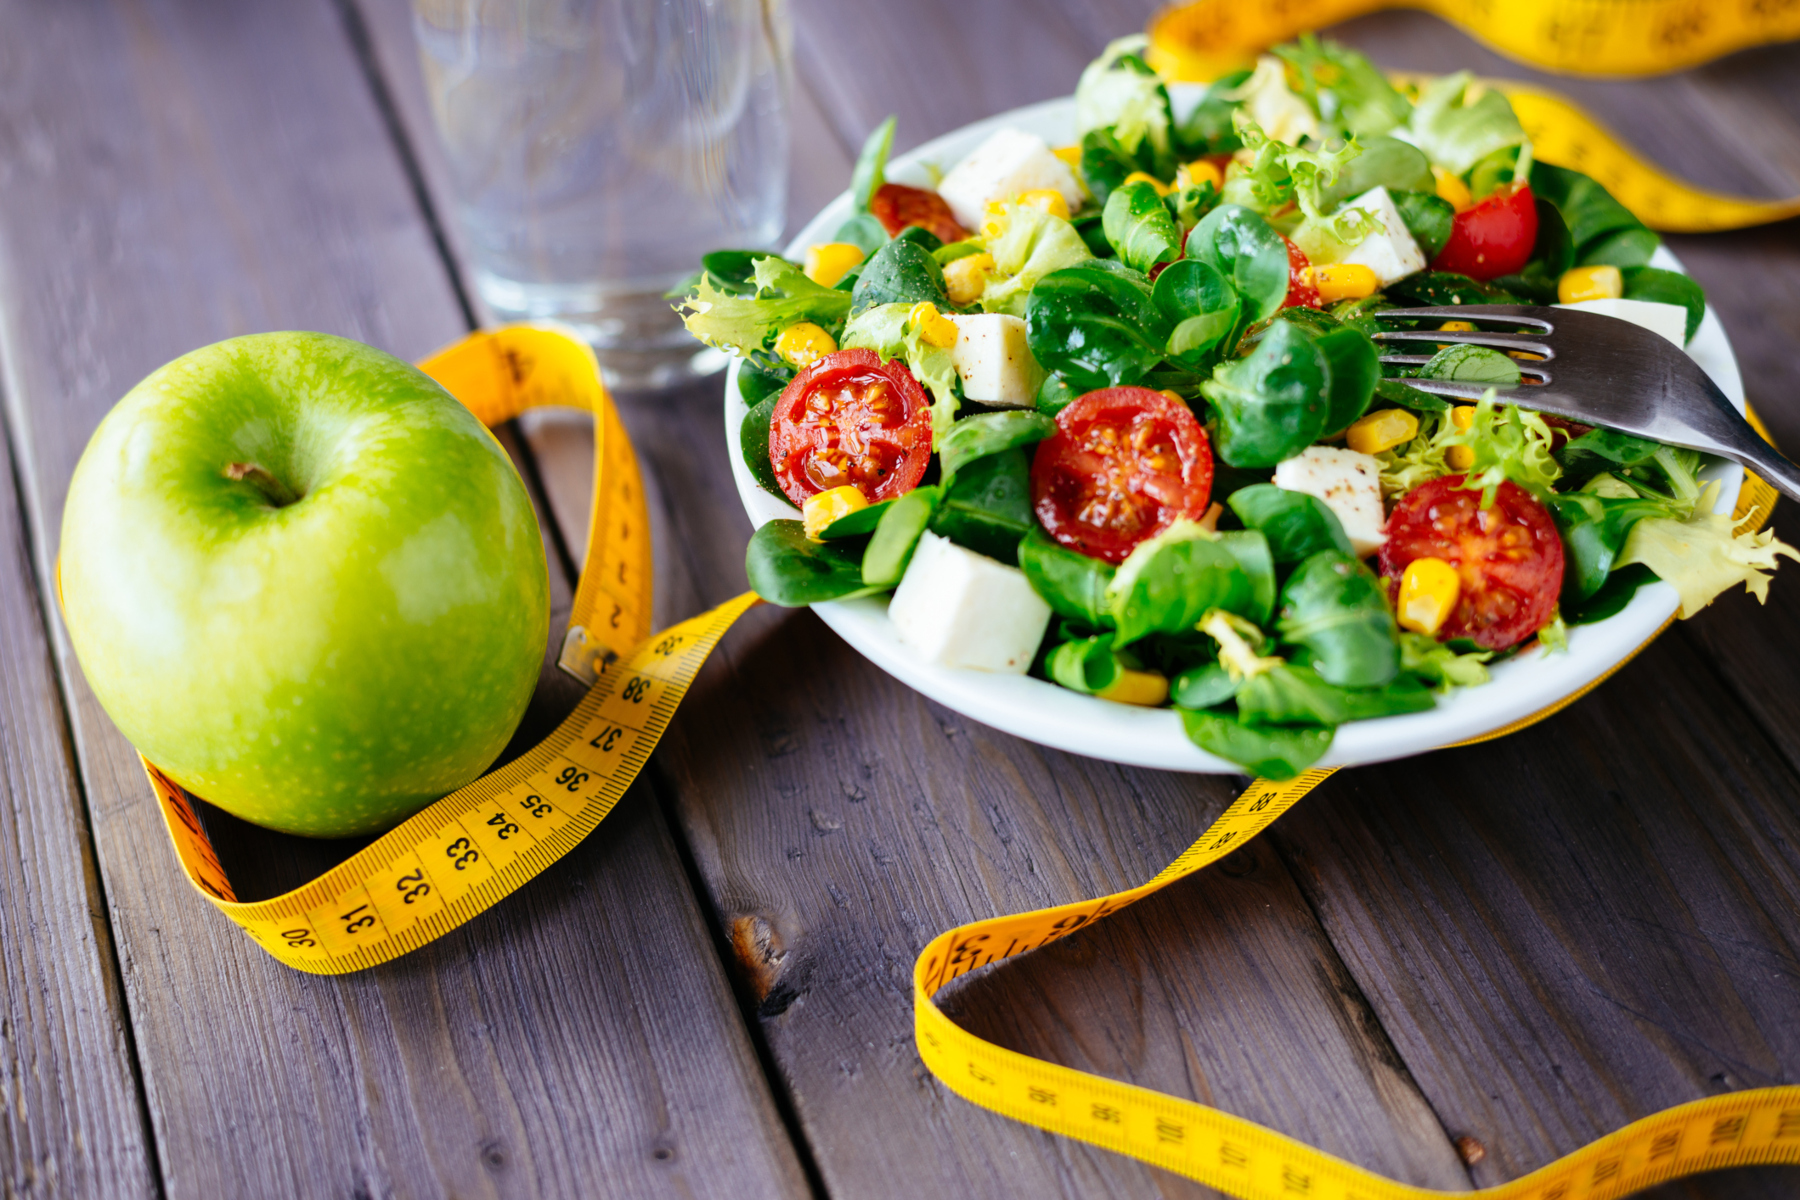 Διατροφή: Διατηρήστε το βάρος σας καταναλώνοντας υγιεινές τροφές